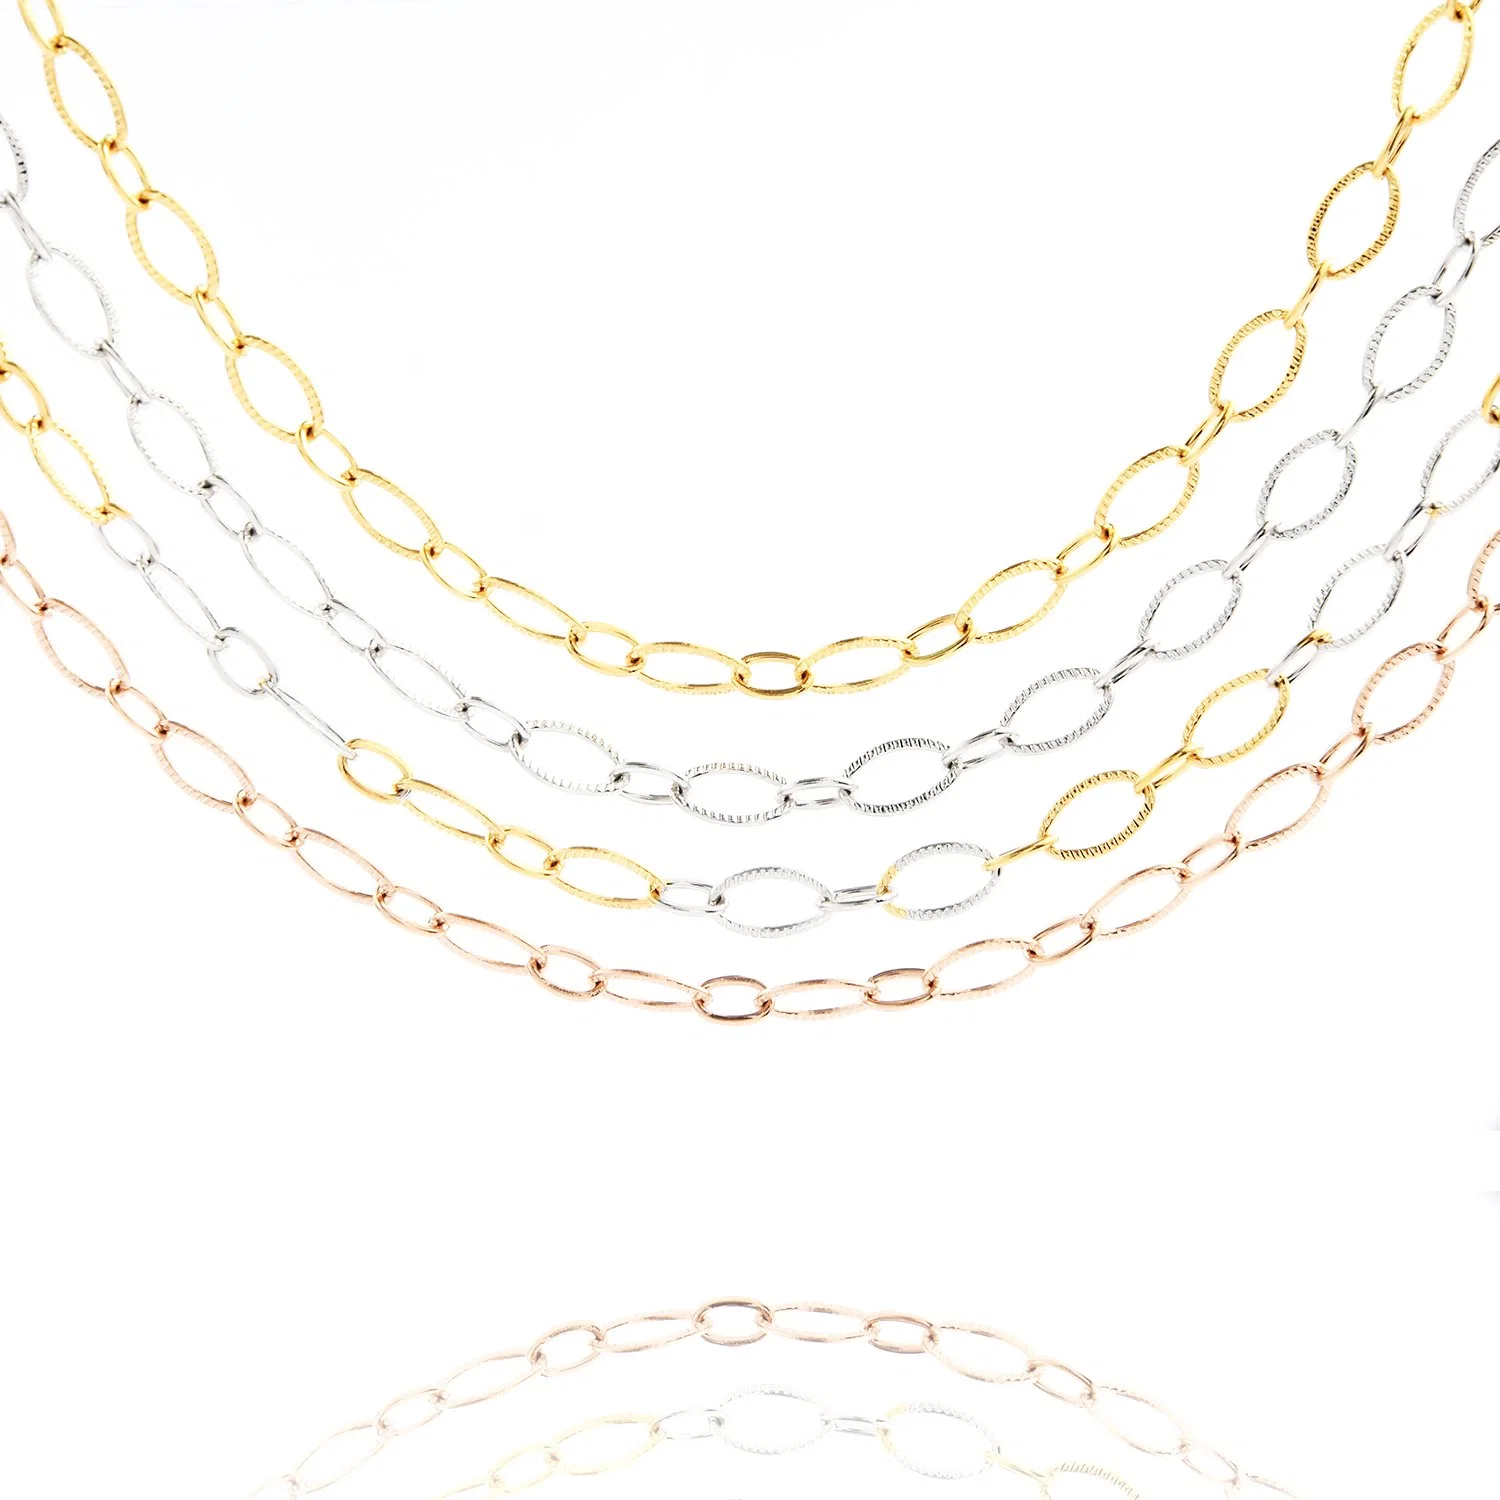 Nouveau style populaire chaîne d'or 18K Collier pendentif Croix de la main - câble gaufré Bijoux pour dame